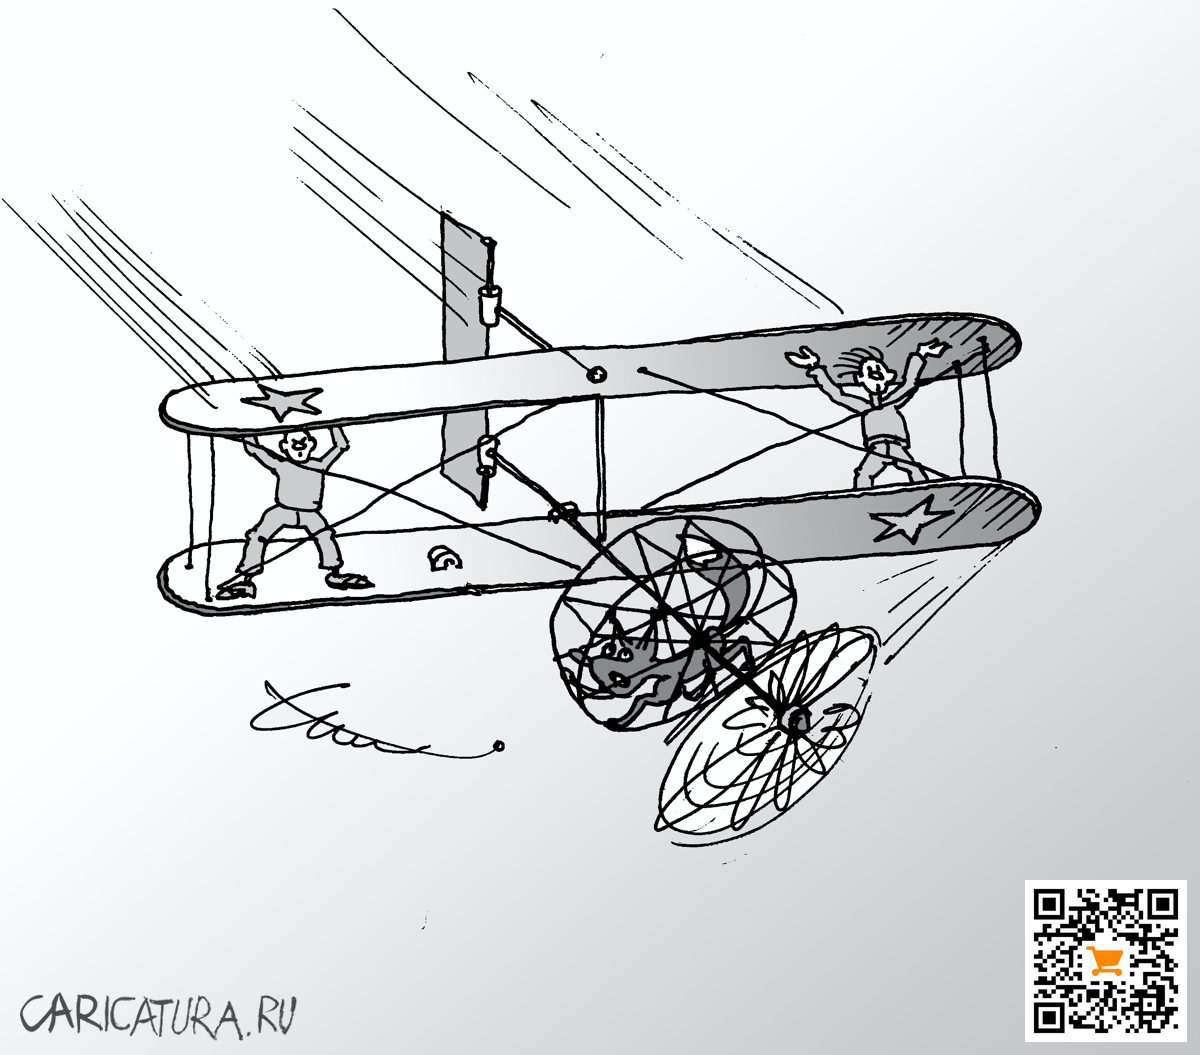 Карикатура "Экологический аэроплан", Юрий Санников